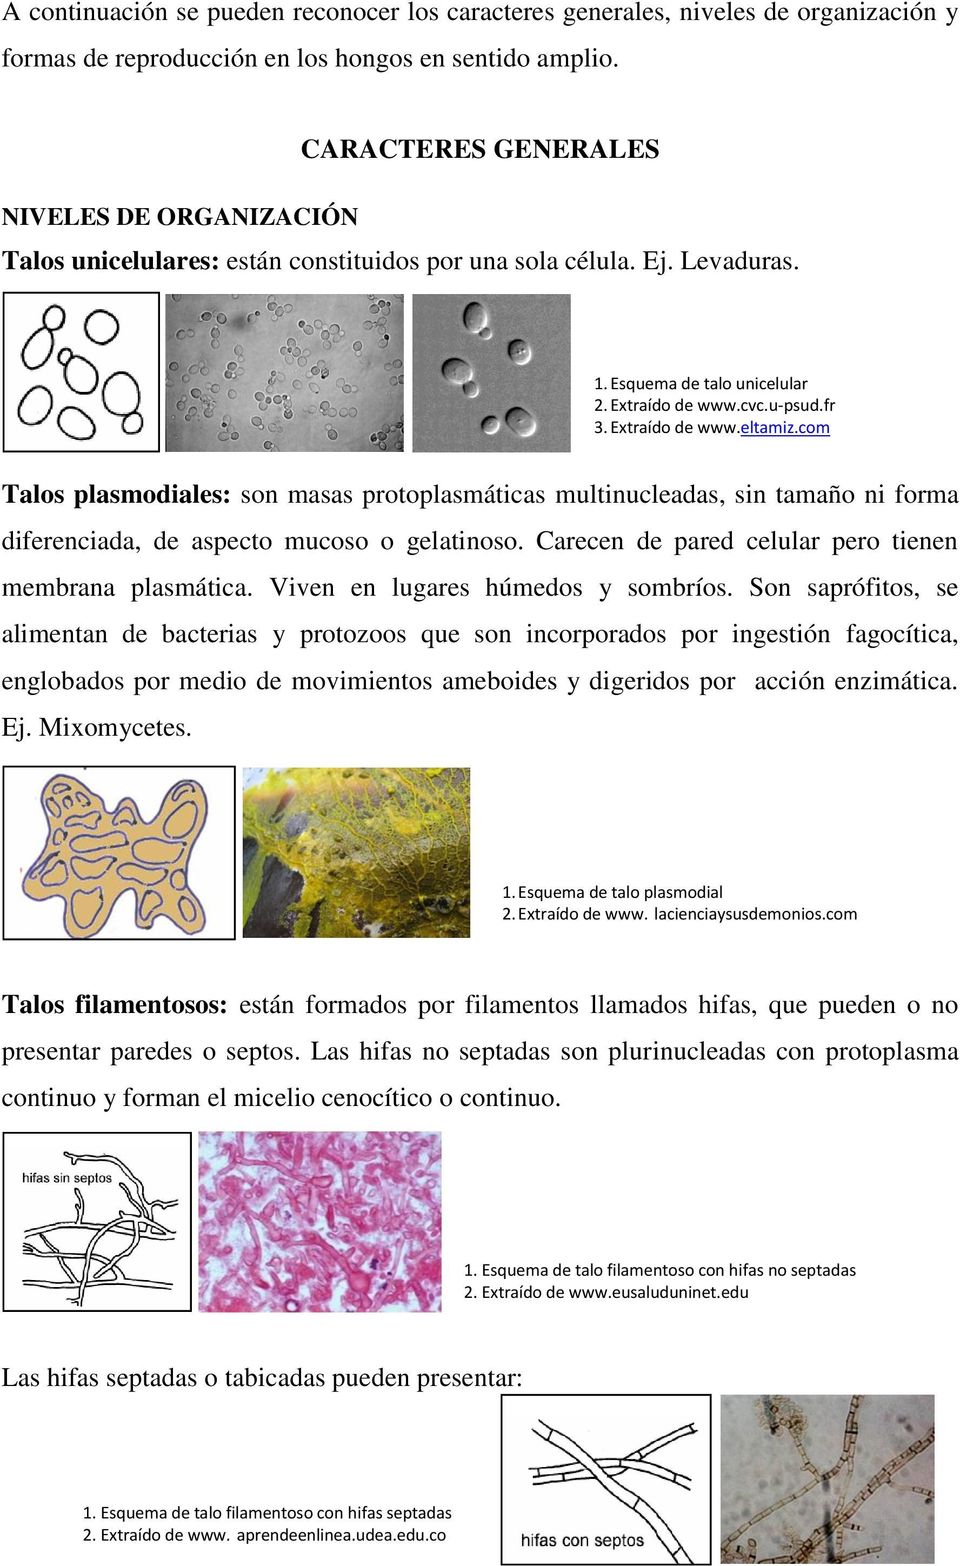 Talos plasmodiales: son masas protoplasmáticas multinucleadas, sin tamaño ni forma diferenciada, de aspecto mucoso o gelatinoso. Carecen de pared celular pero tienen membrana plasmática.